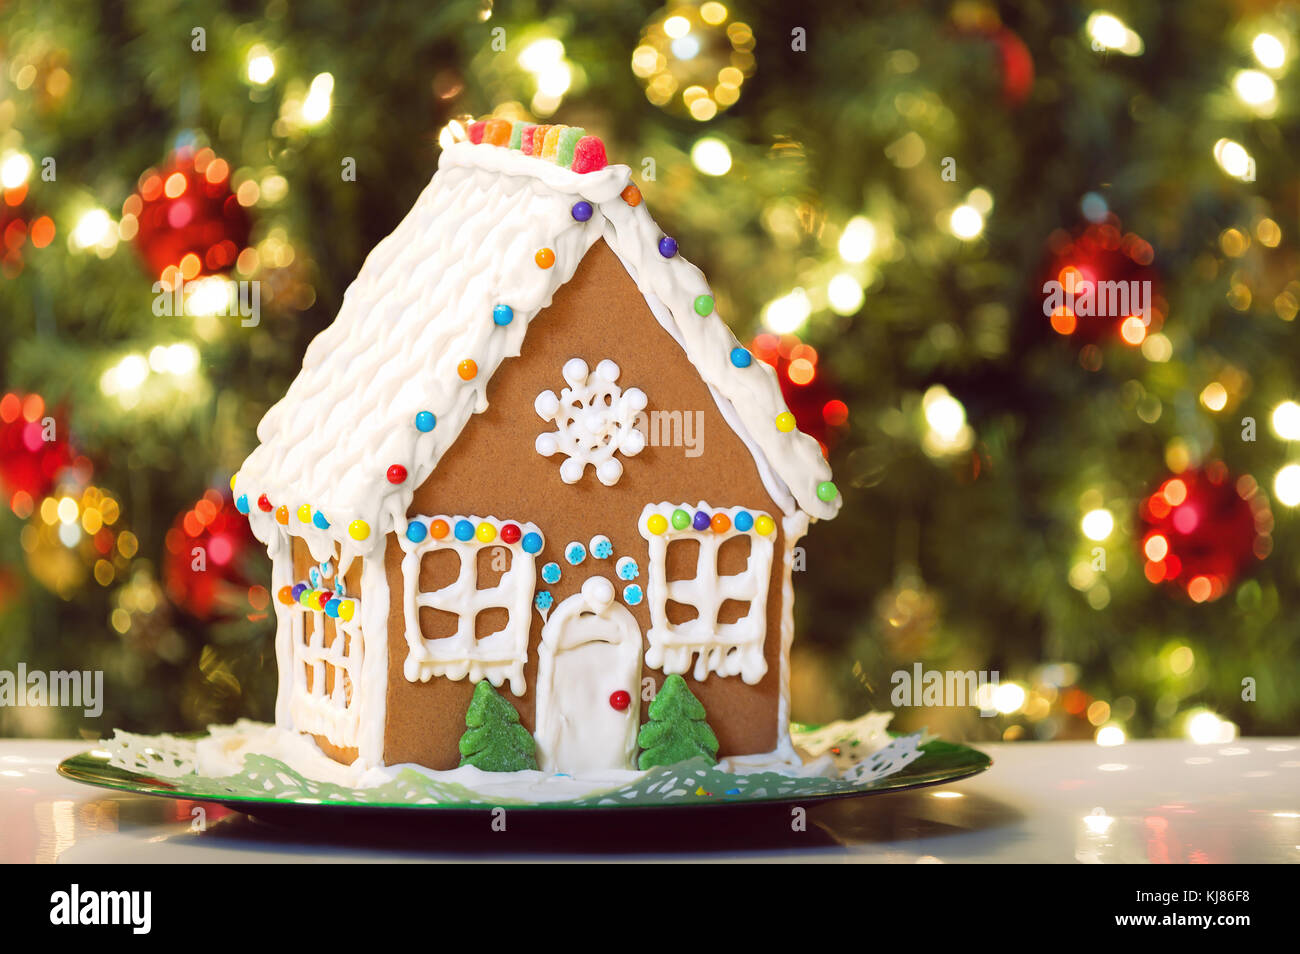 Noël fait maison gingerbread house affiche sur une table. Décoration arbre de Noël dans l'arrière-plan. Banque D'Images